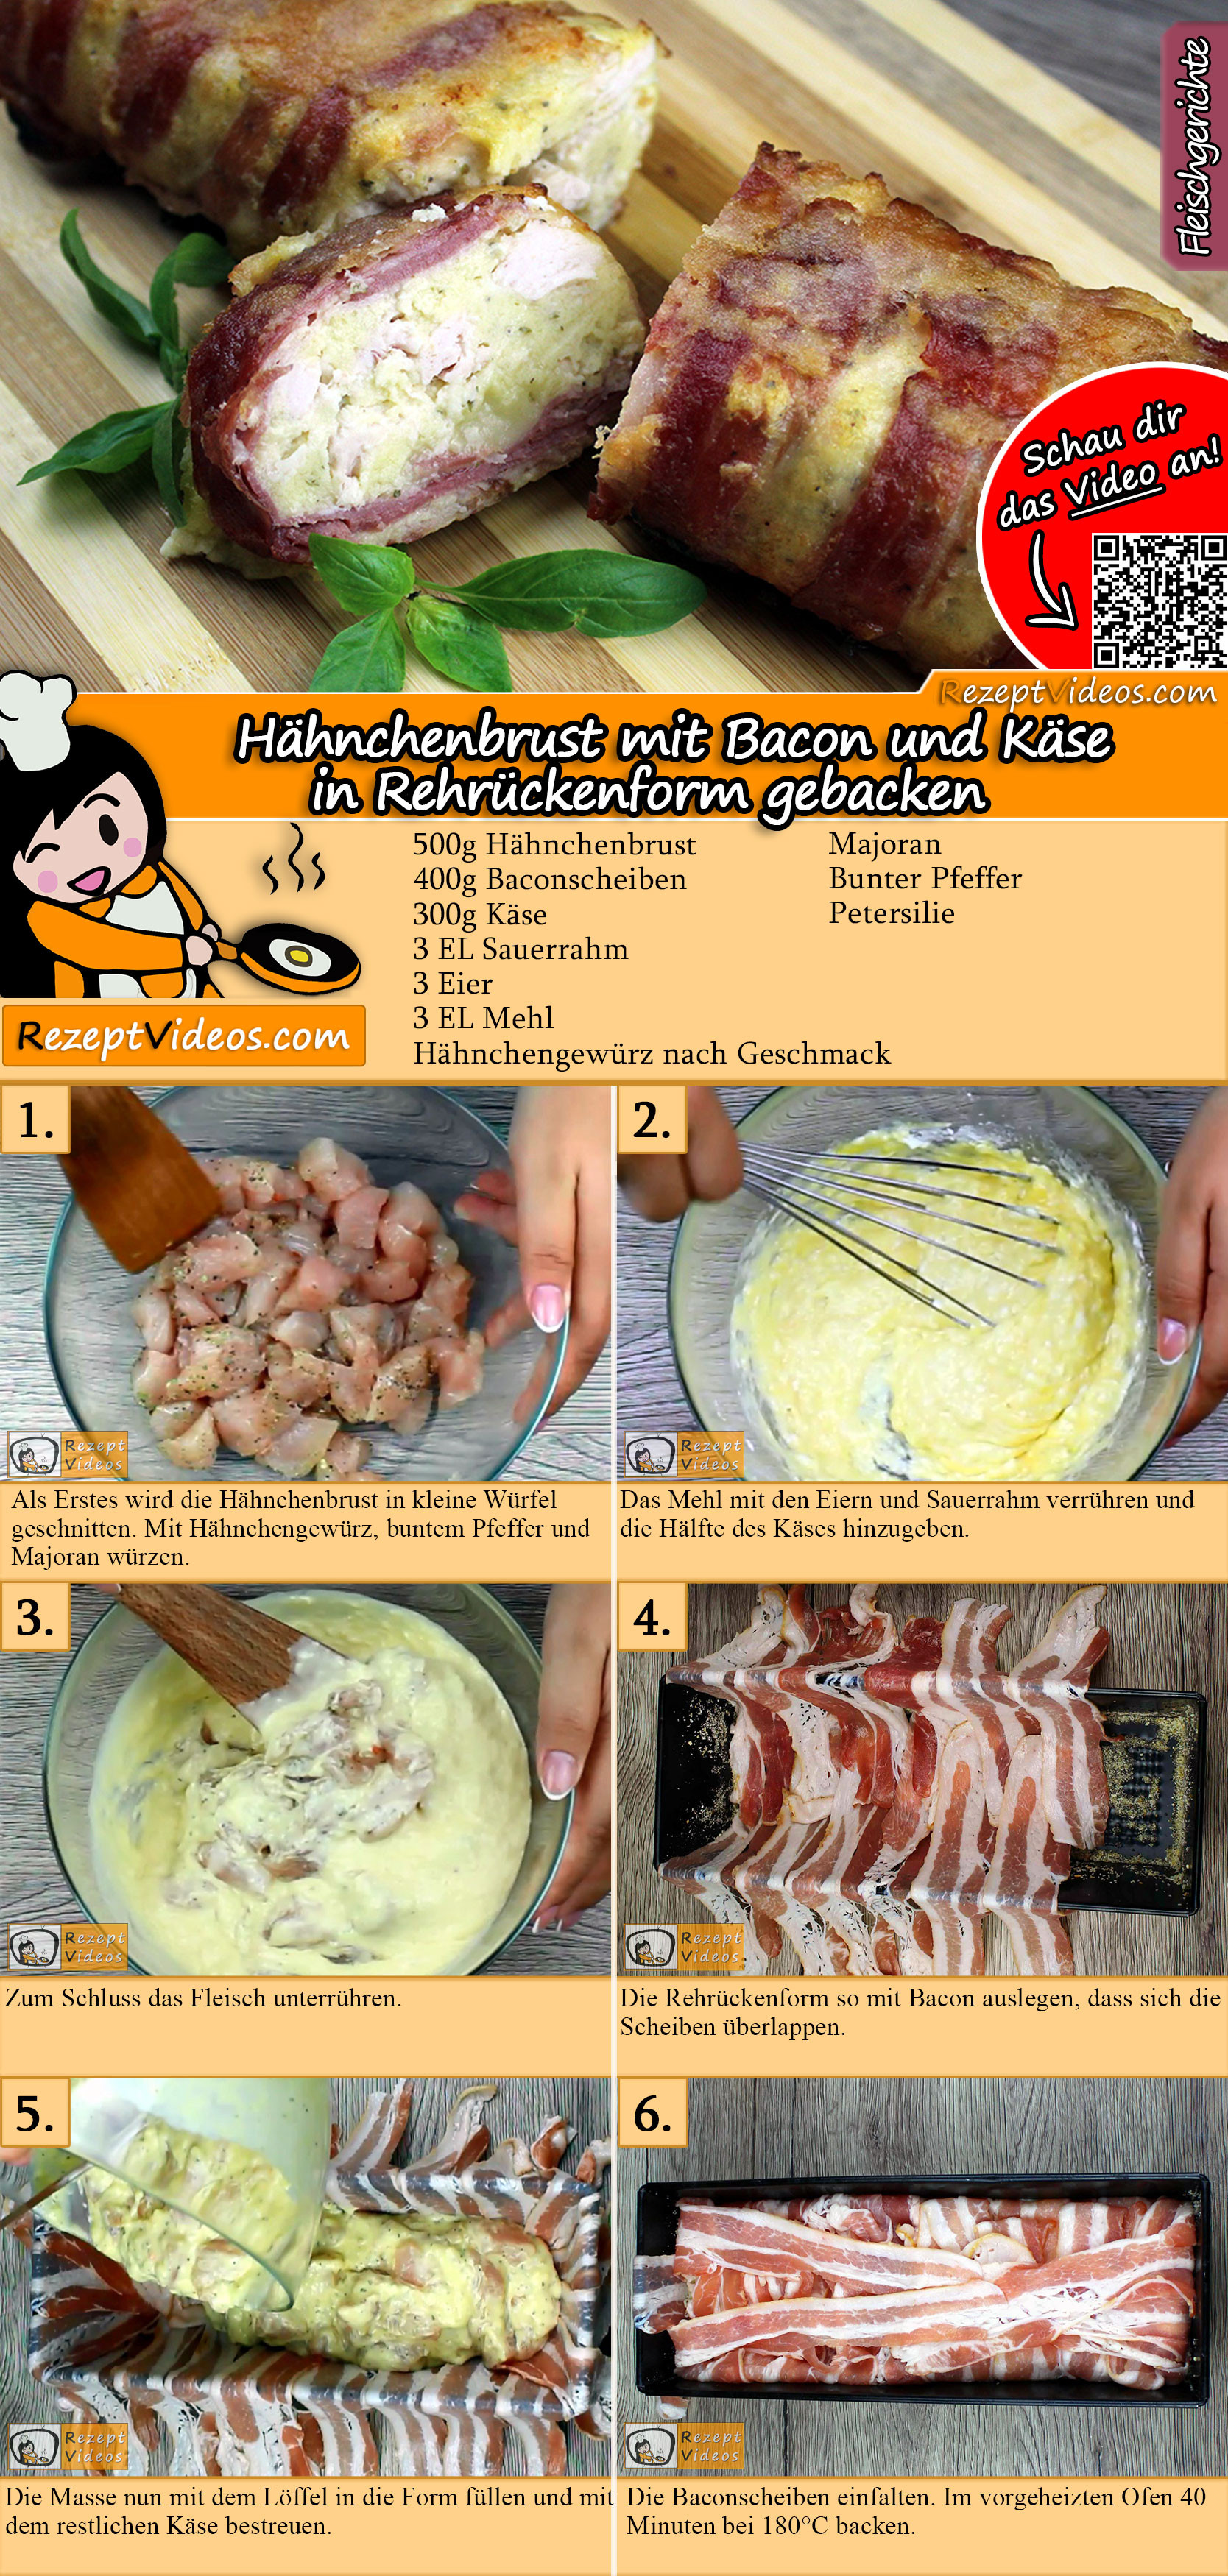 Hähnchenbrust mit Bacon und Käse in Rehrückenform gebacken Rezept mit Video